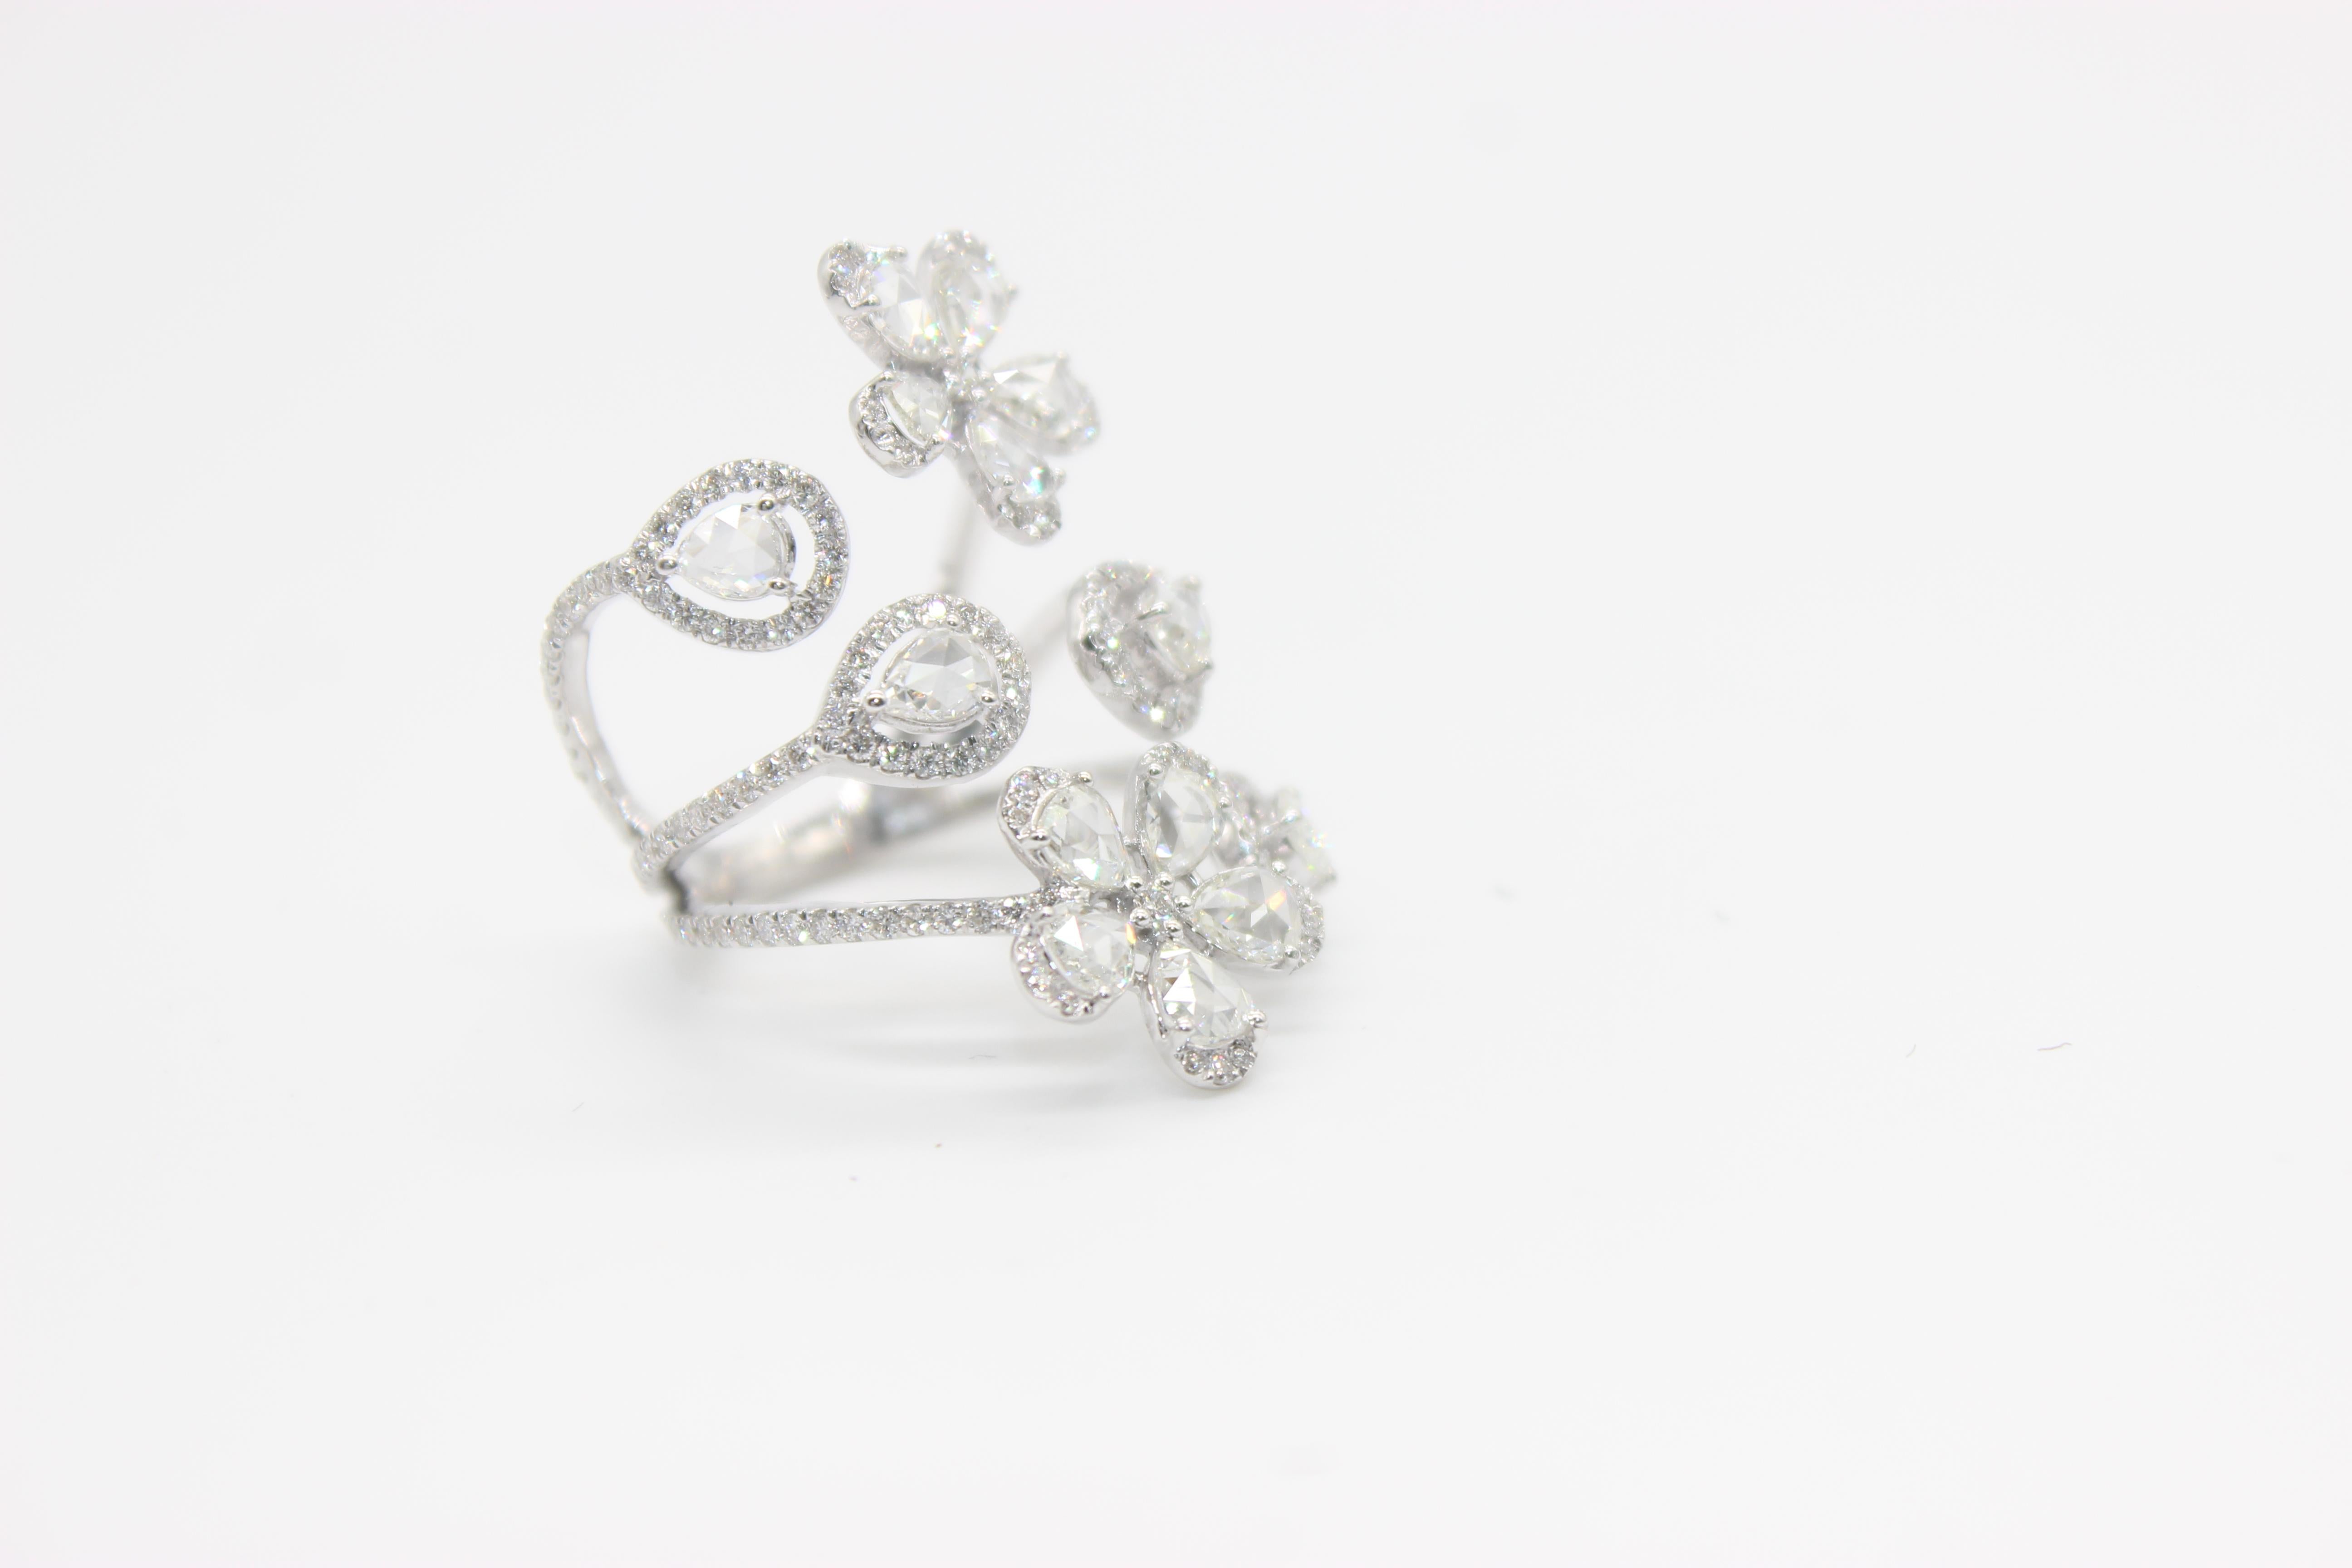 PANIM 2,65 Karat Birnenform Diamant Rosecut 18K Weißgold Floral Ring

Dieser Ring besteht hauptsächlich aus floralen Motiven und ist Teil der Panim Floral Kollektion. Der Ring umhüllt den Finger mit einer Vielzahl von Blumendesigns. Dieser Ring kann